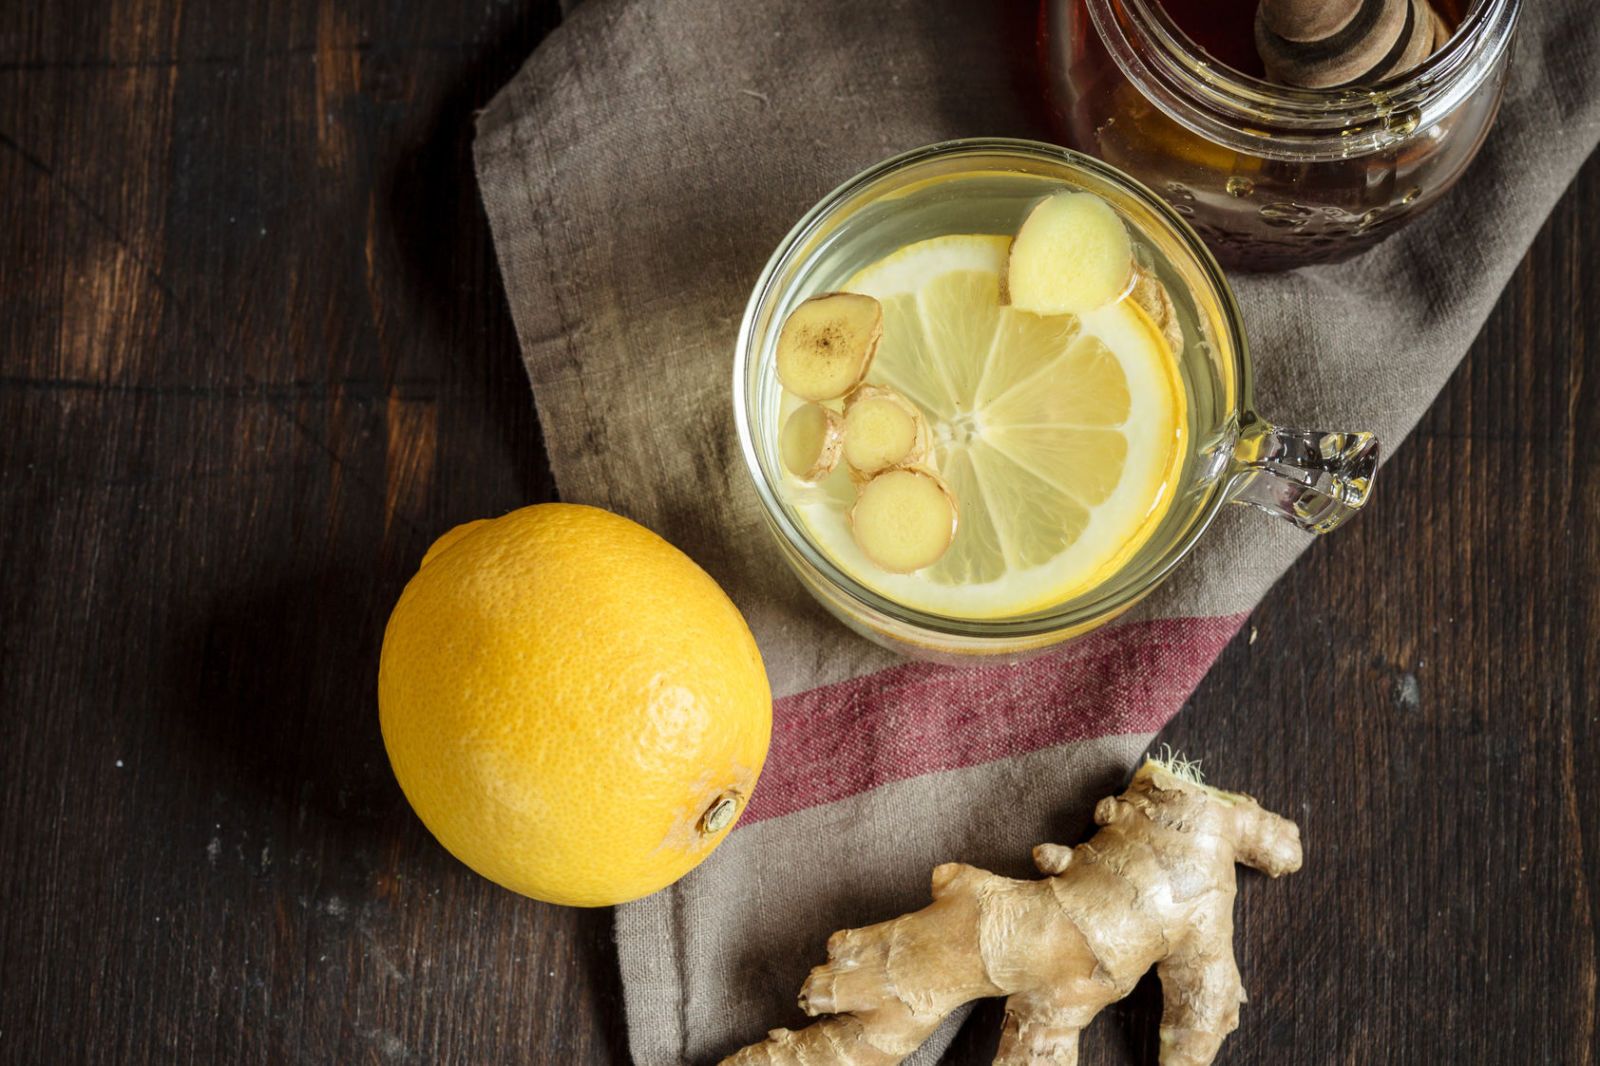 Tisana zenzero e limone per dimagrire: benefici e controindicazioni